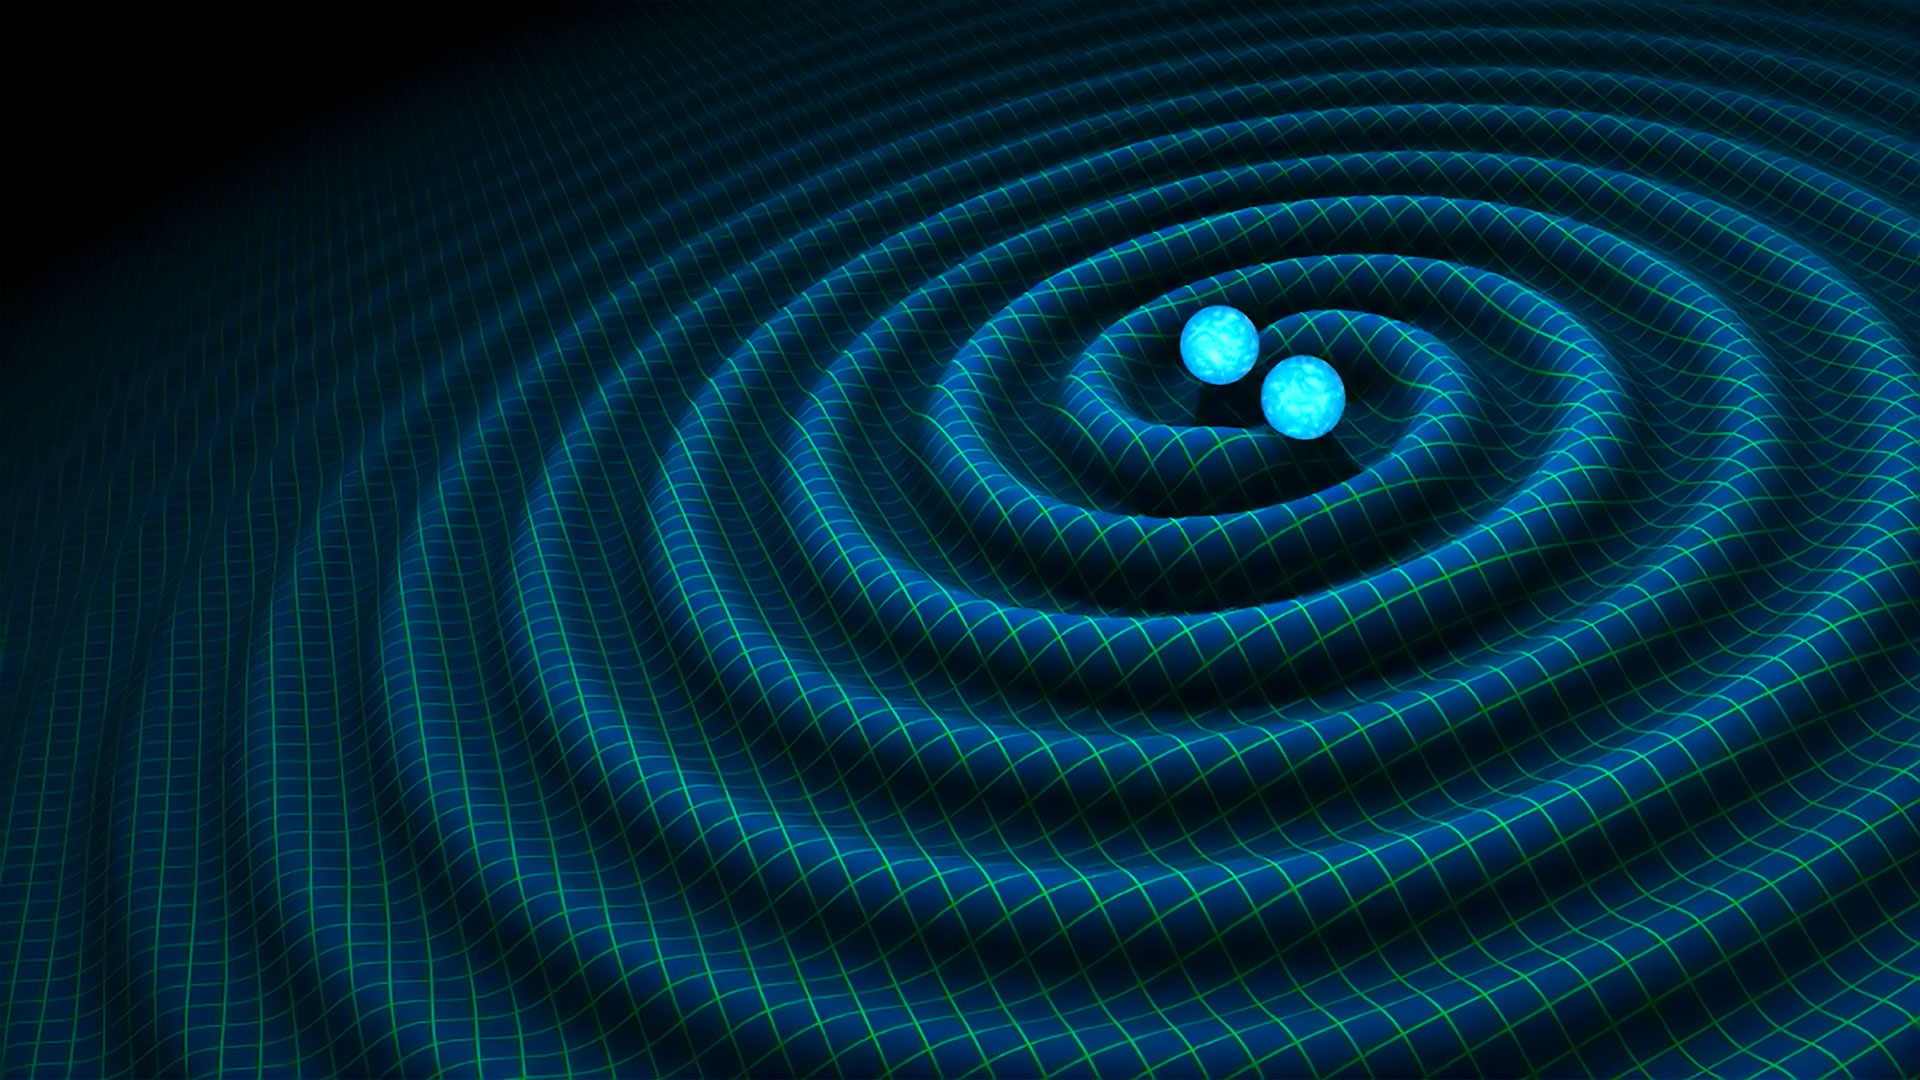 Ondes gravitationnelles : leur détection expliquée en une minute